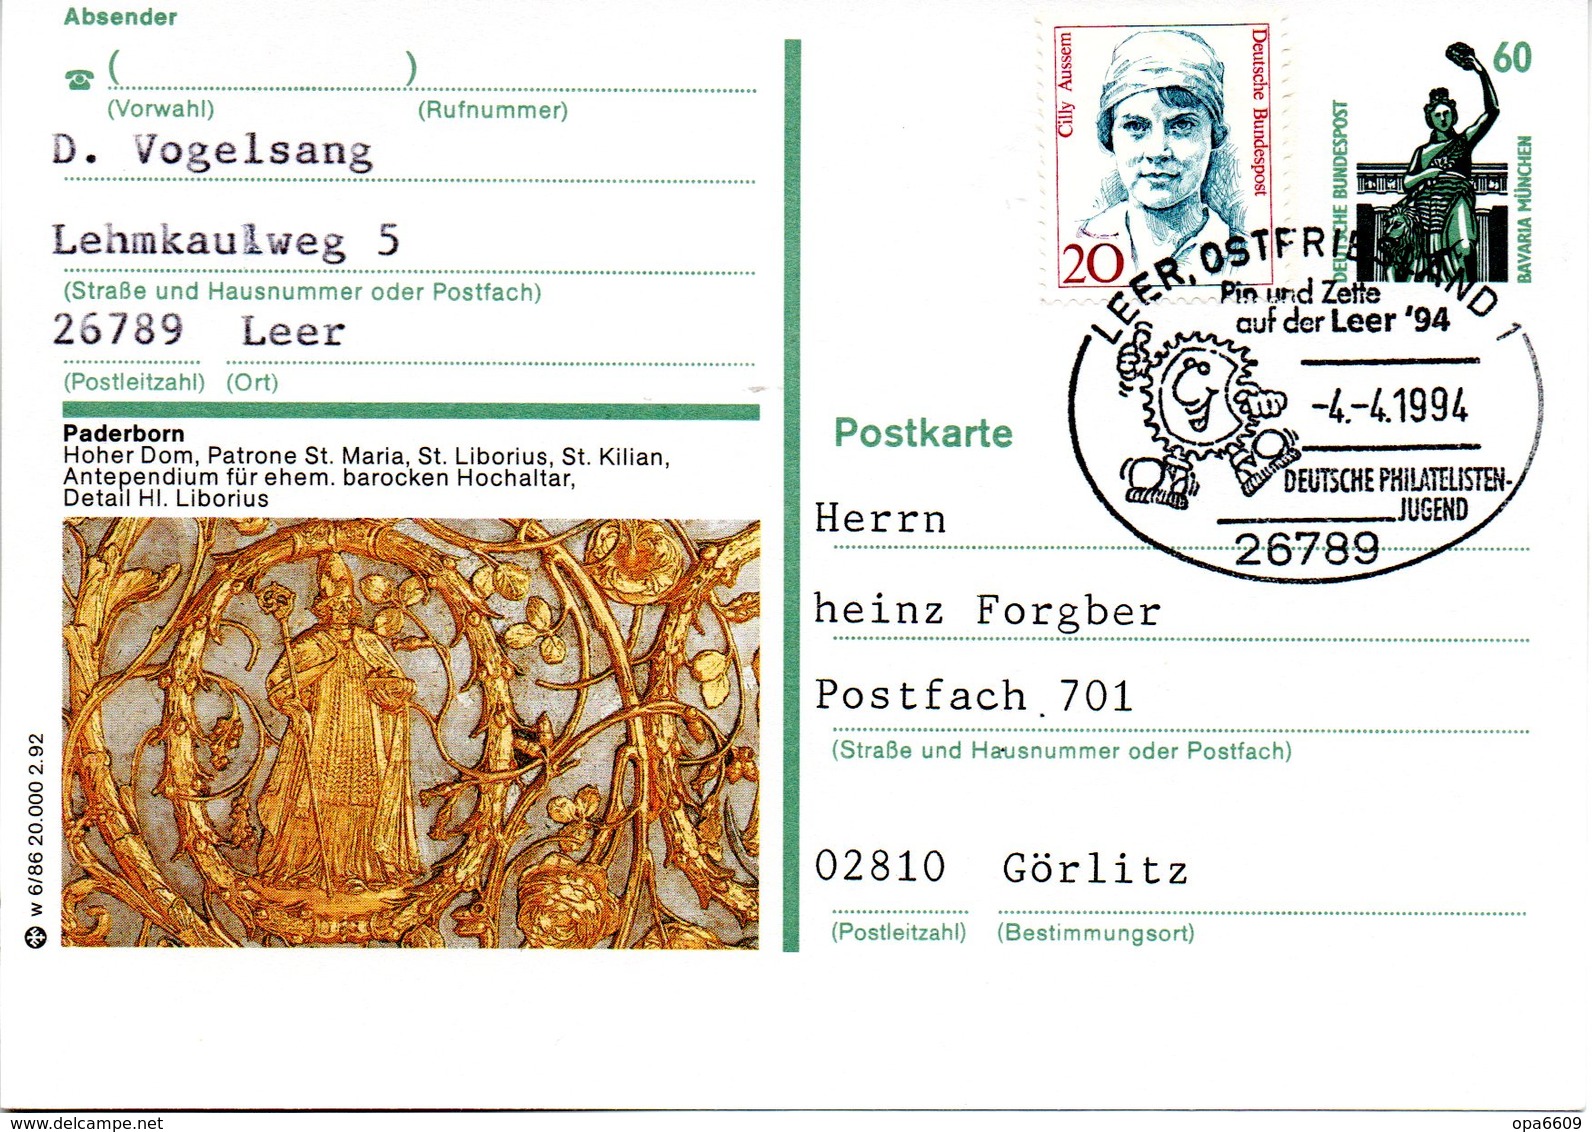 BRD Bildpostkarte 60 Pf.WSt.Sehenswürdigkeiten Bavaria München P139 W 6/86 ZF "Paderborn" SST 4.4.94 LEER, OSTFRIESLAND - Cartoline Illustrate - Usati